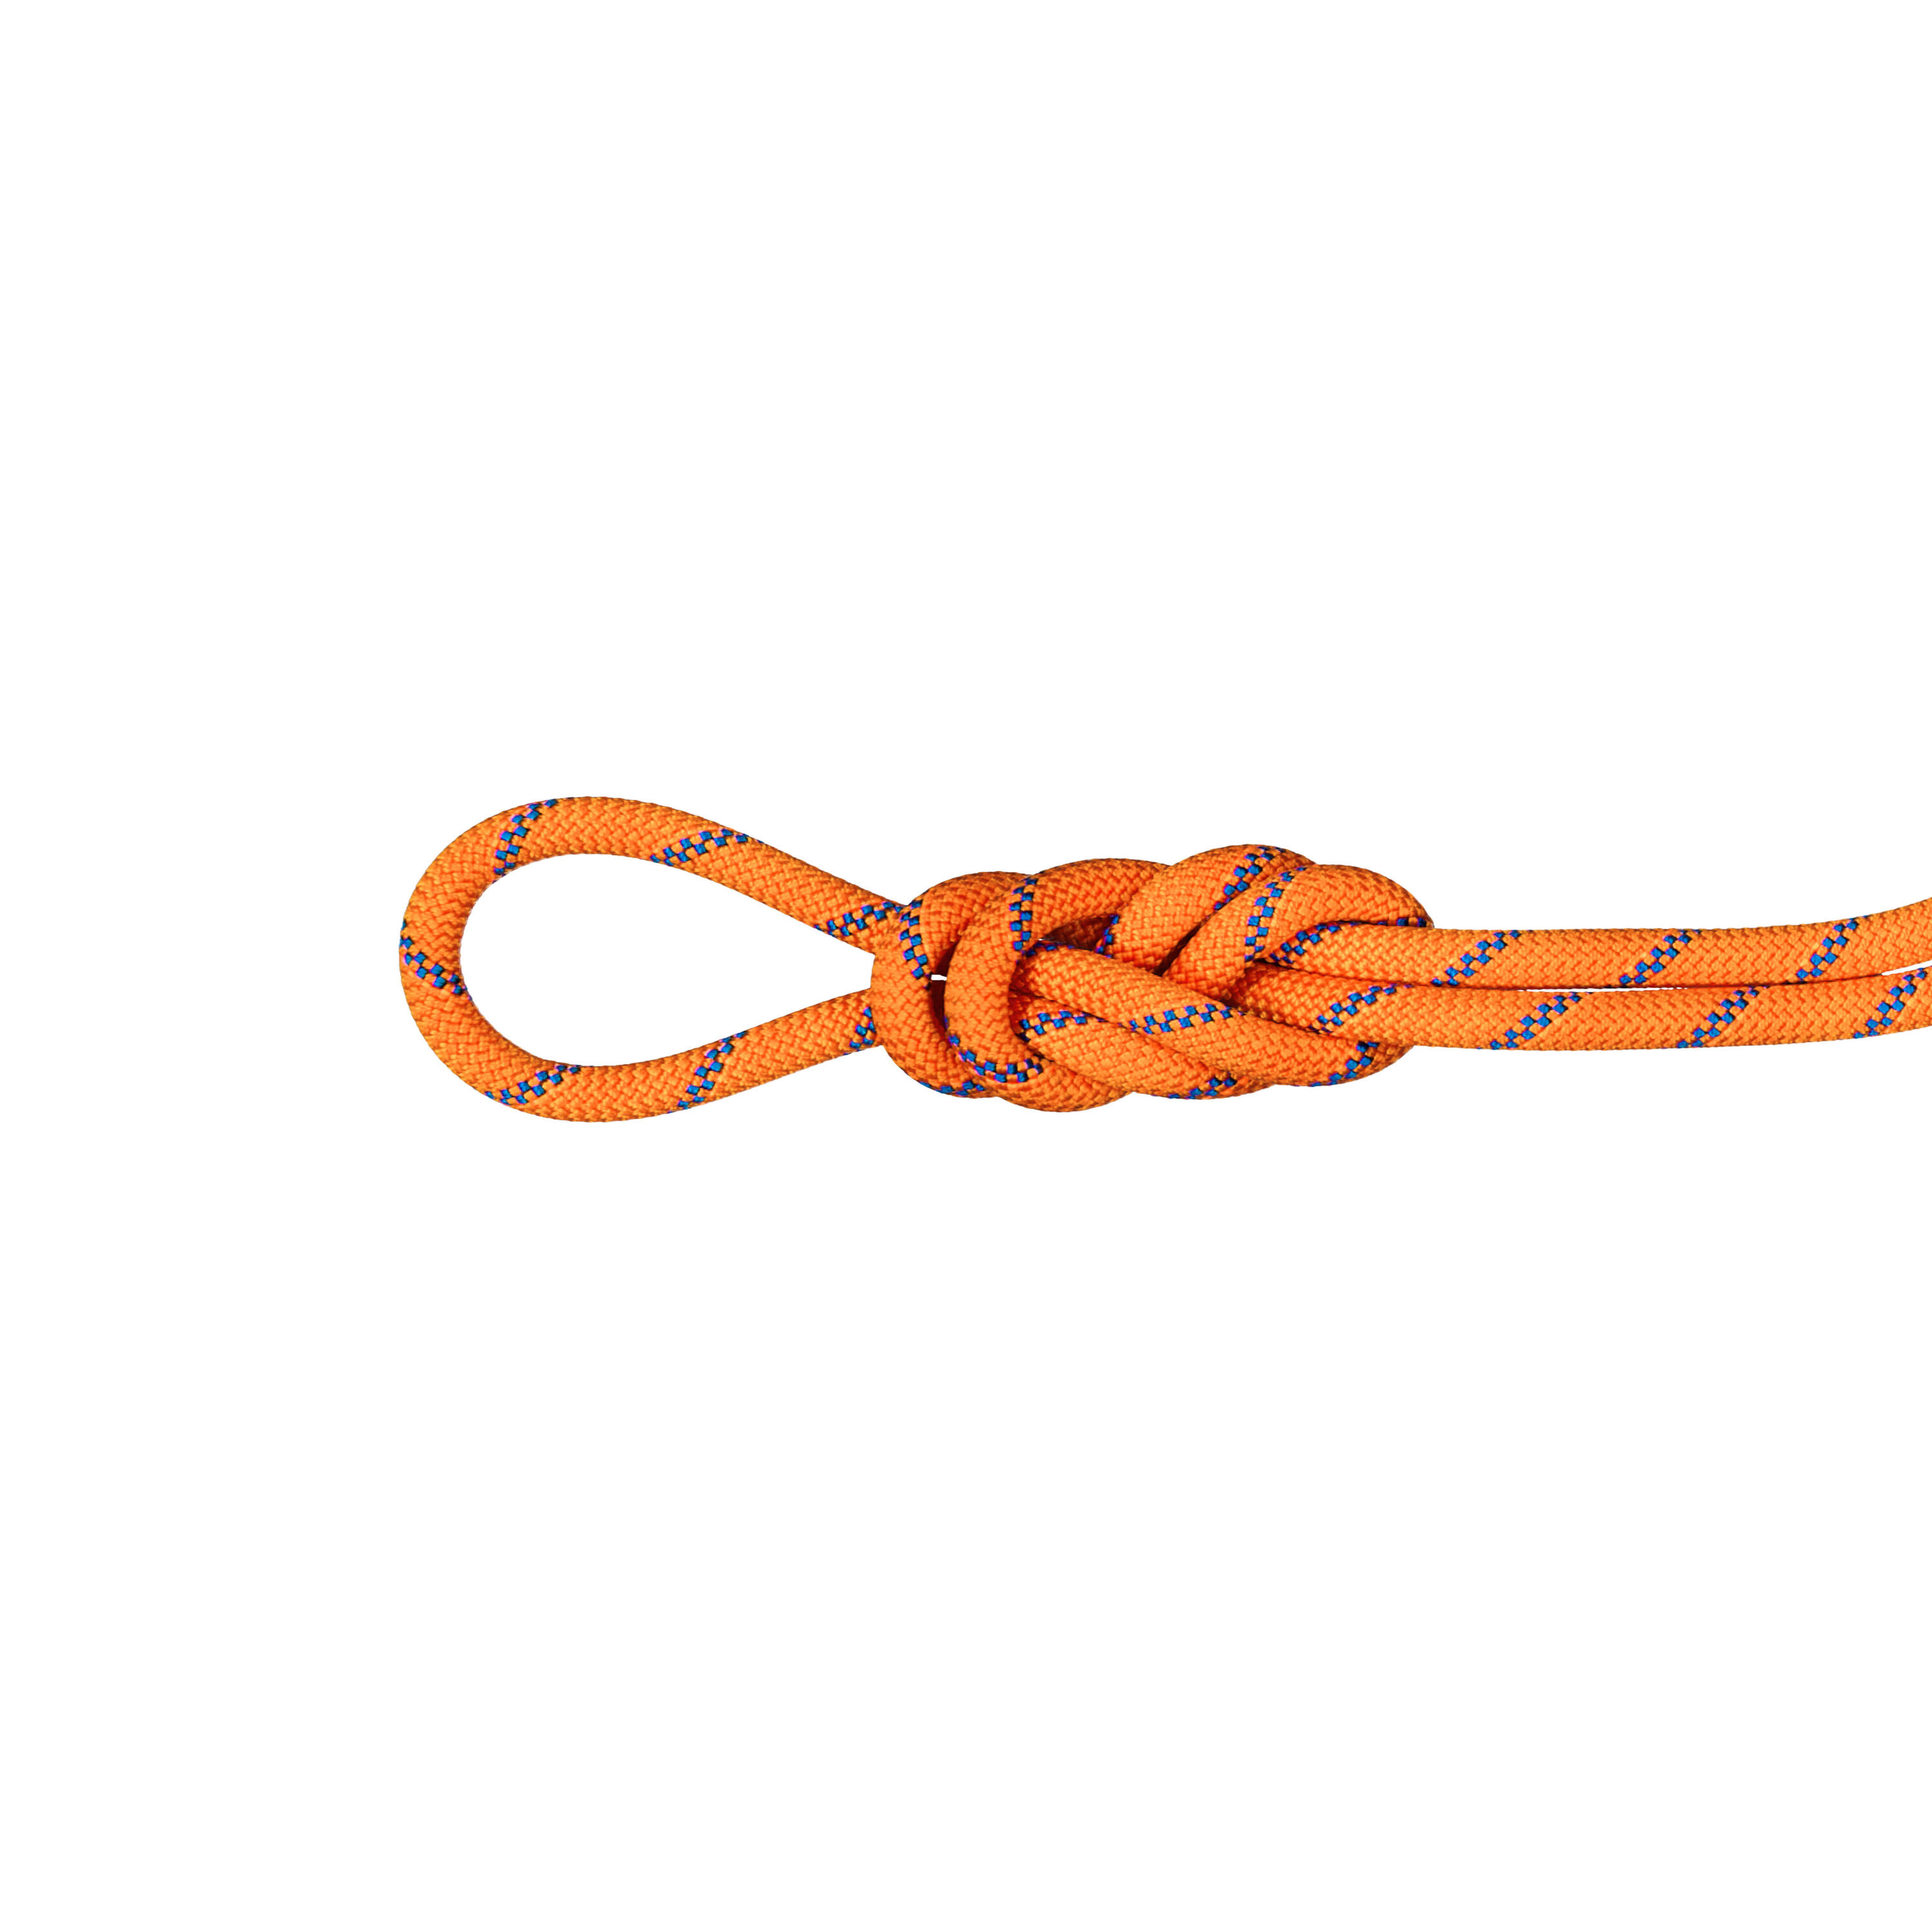 Alpine Sender Dry Triple-Rated Rope 9.0 mm x 50m - Orange 1/4